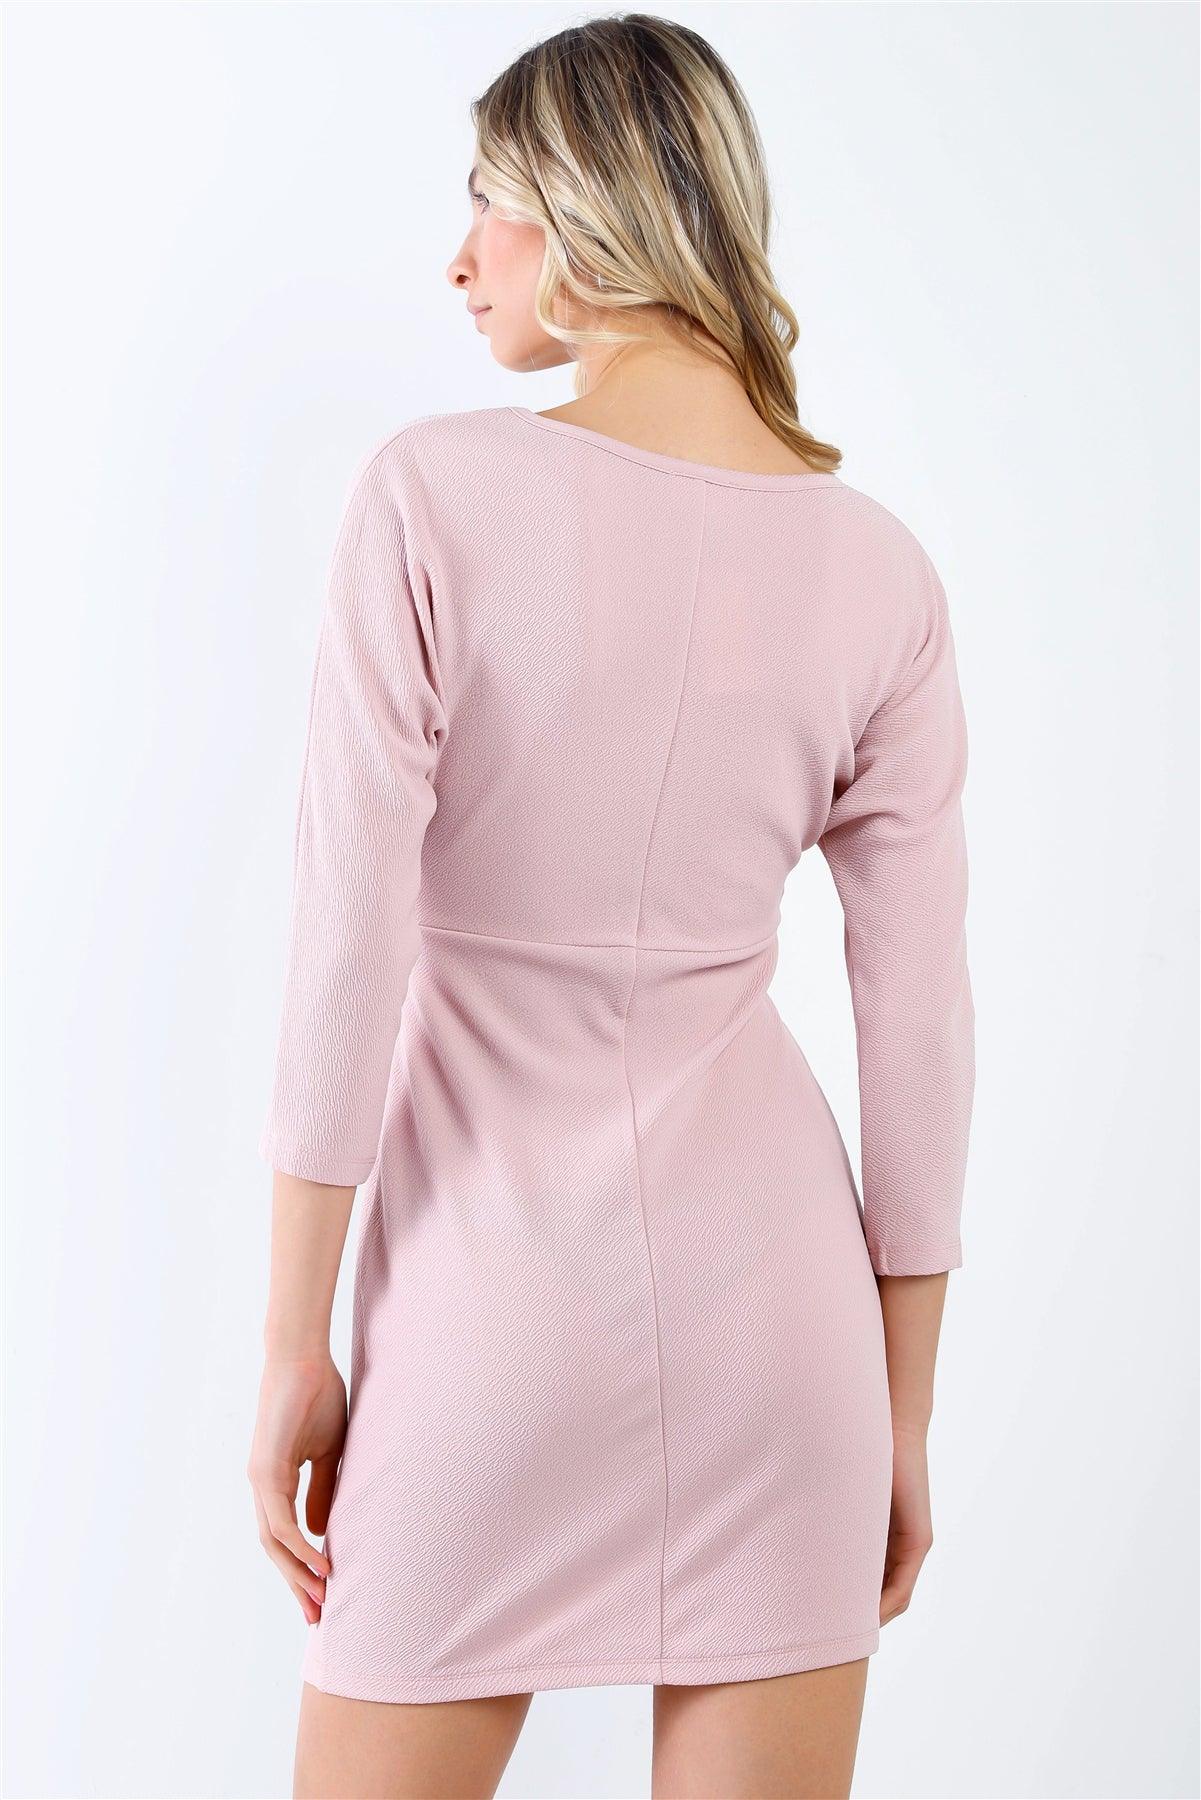 Blush Textured Front Twist Detail Half Sleeve Mini Dress /1-2-1